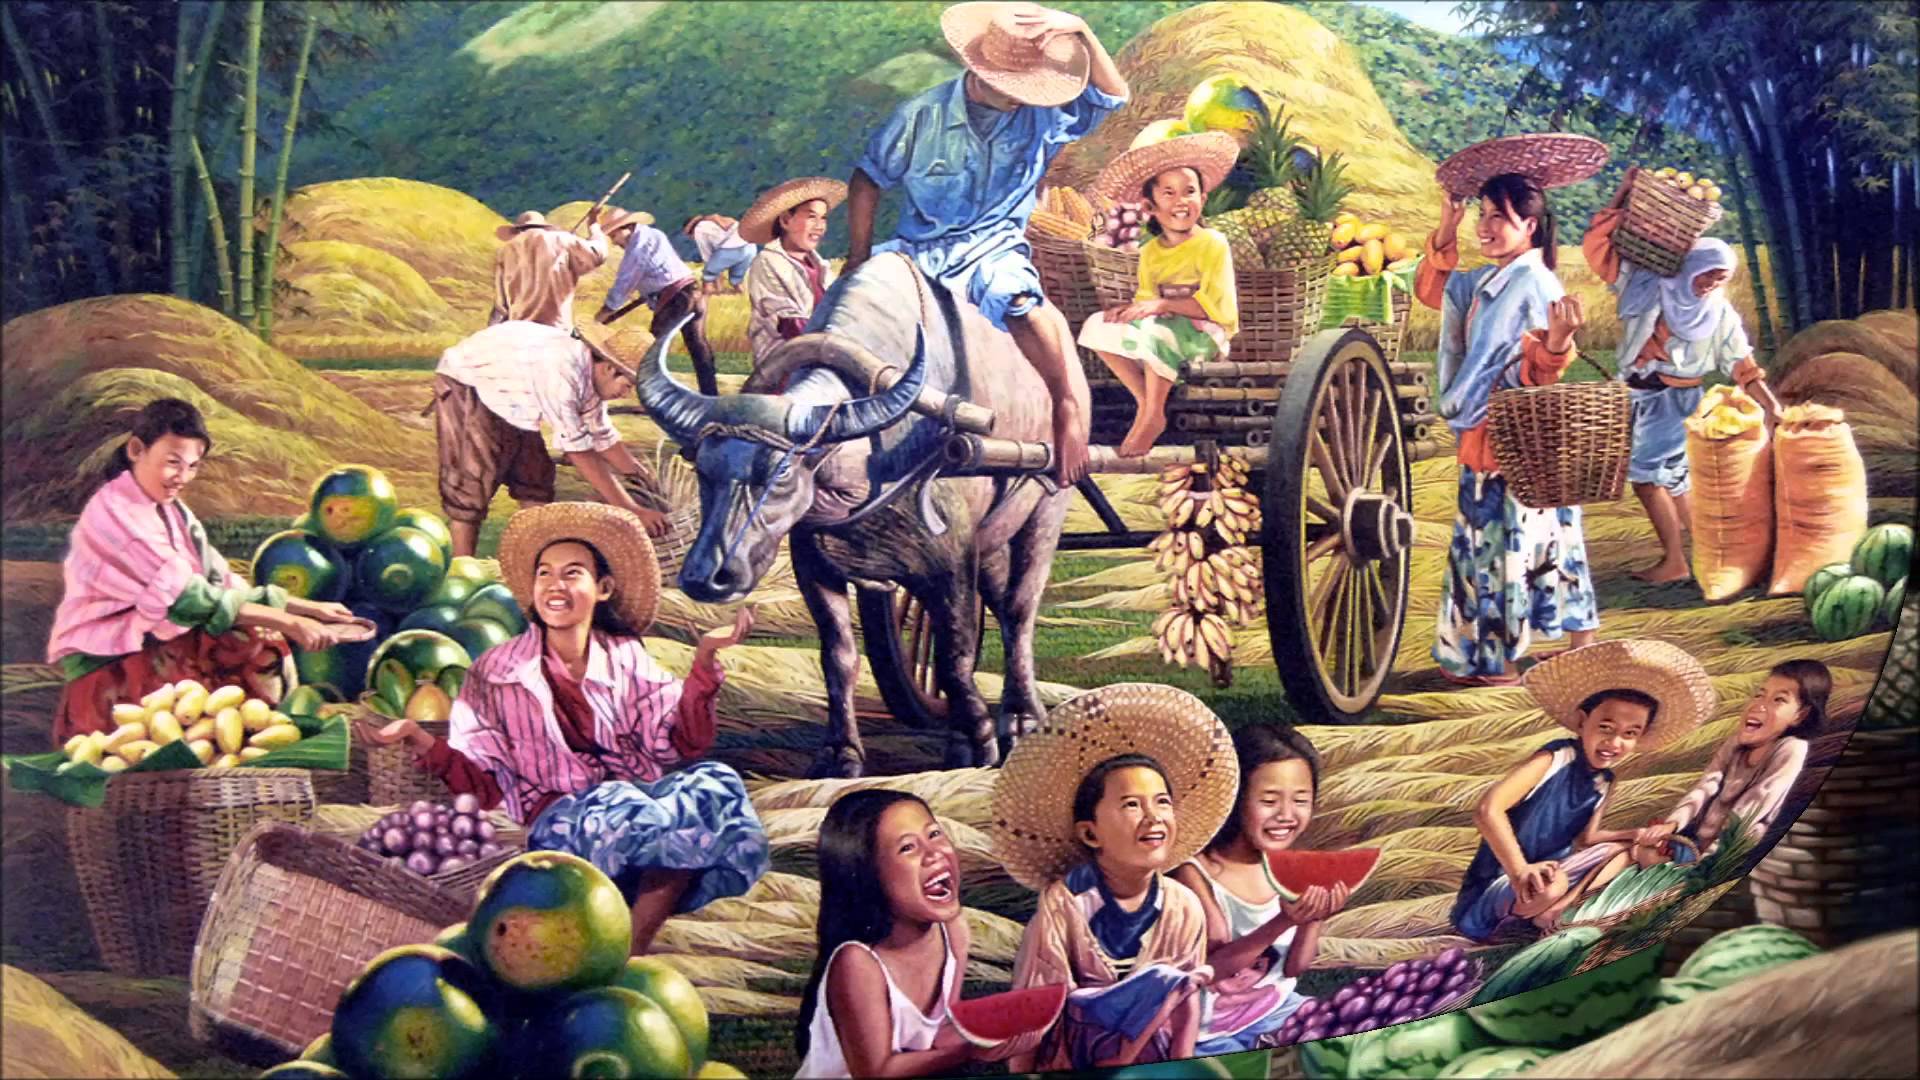 Philippines Art Wallpapers - Top Những Hình Ảnh Đẹp